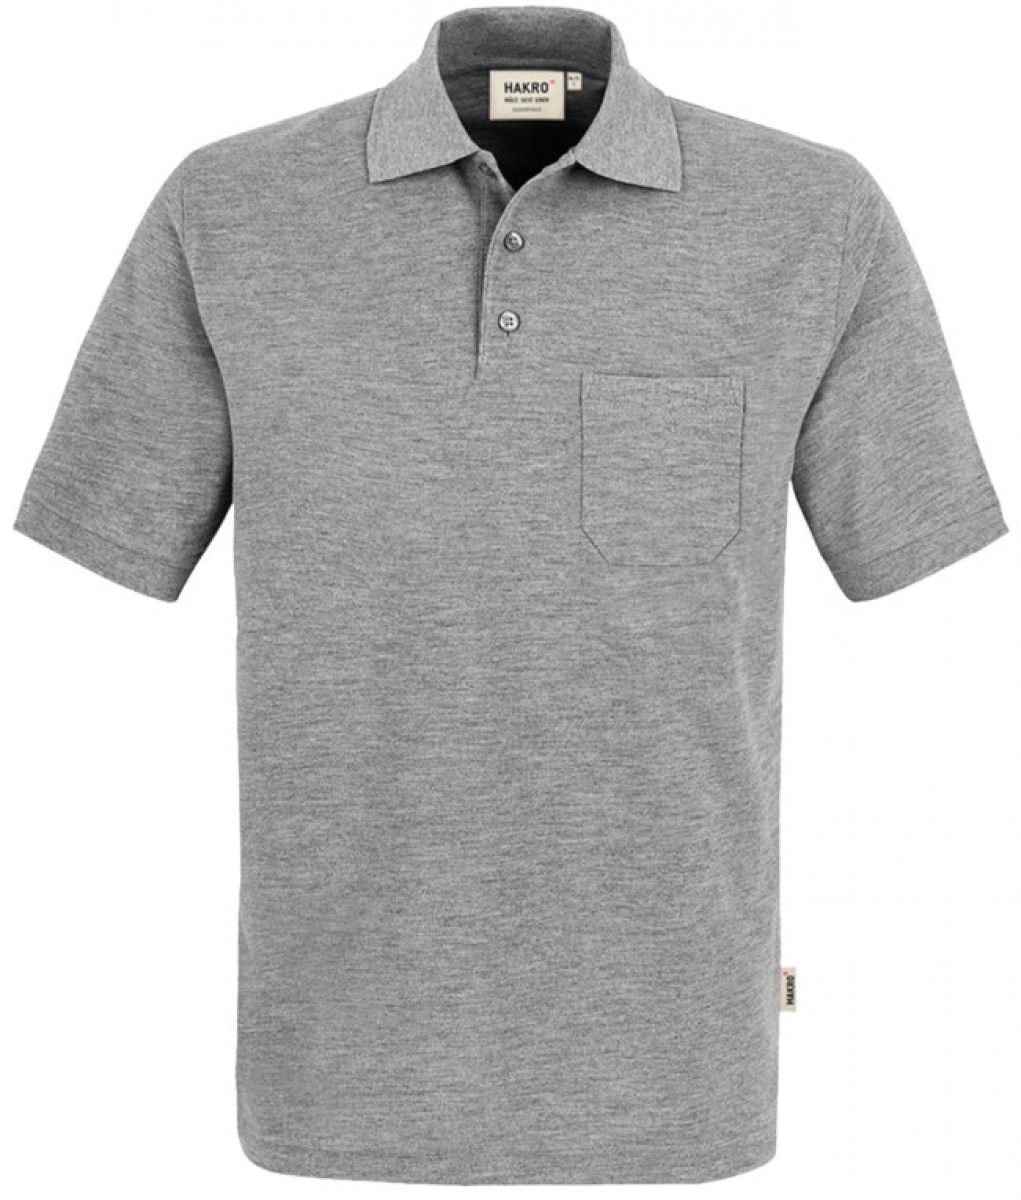 HAKRO-Worker-Shirts, Pocket-Poloshirt Top, grau-meliert